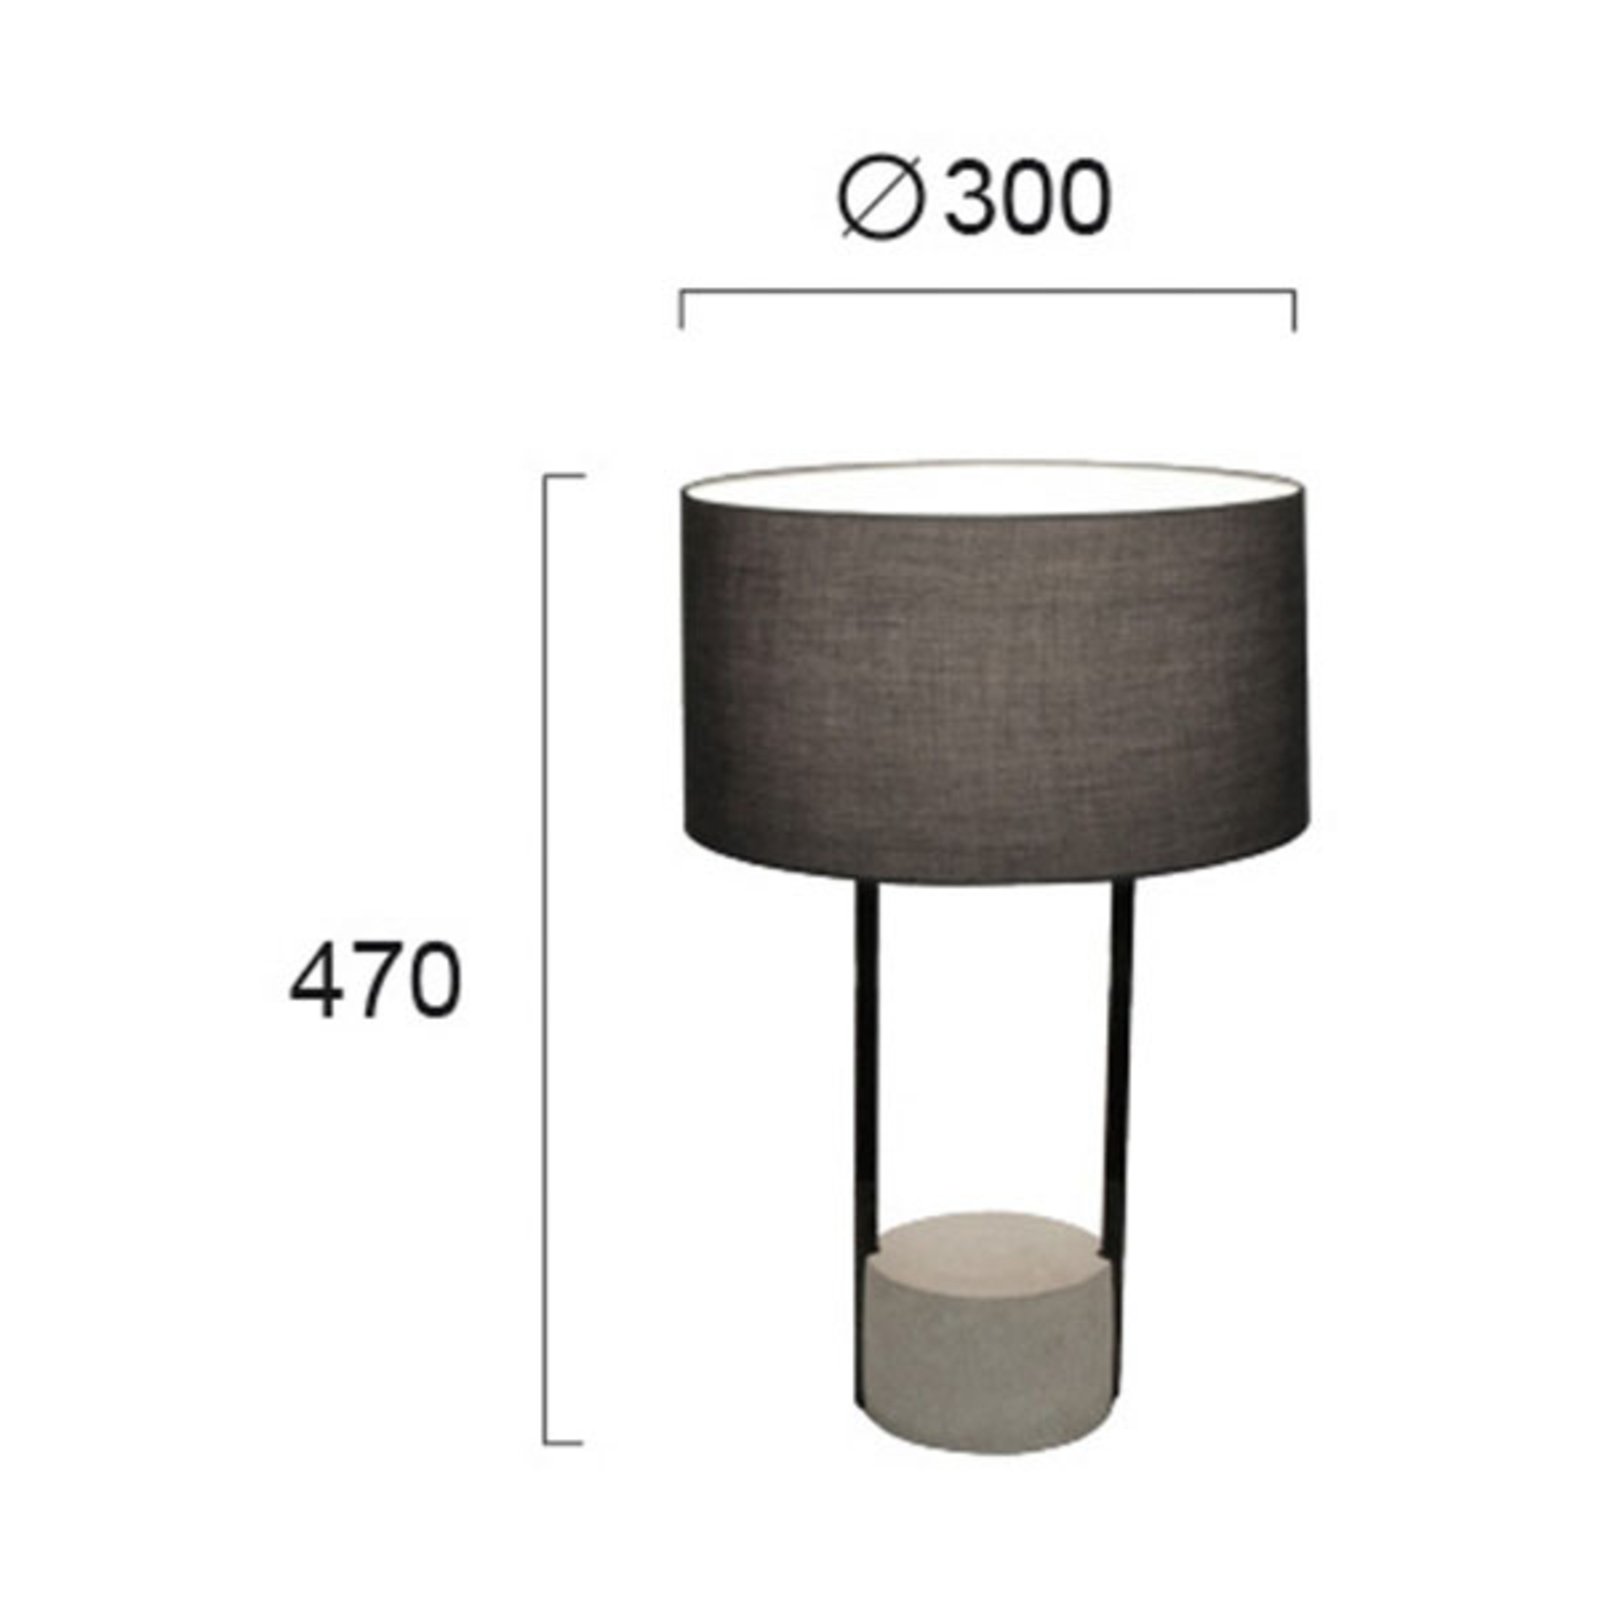 Lampa stołowa Allegro z kloszem tekstylnym, szara